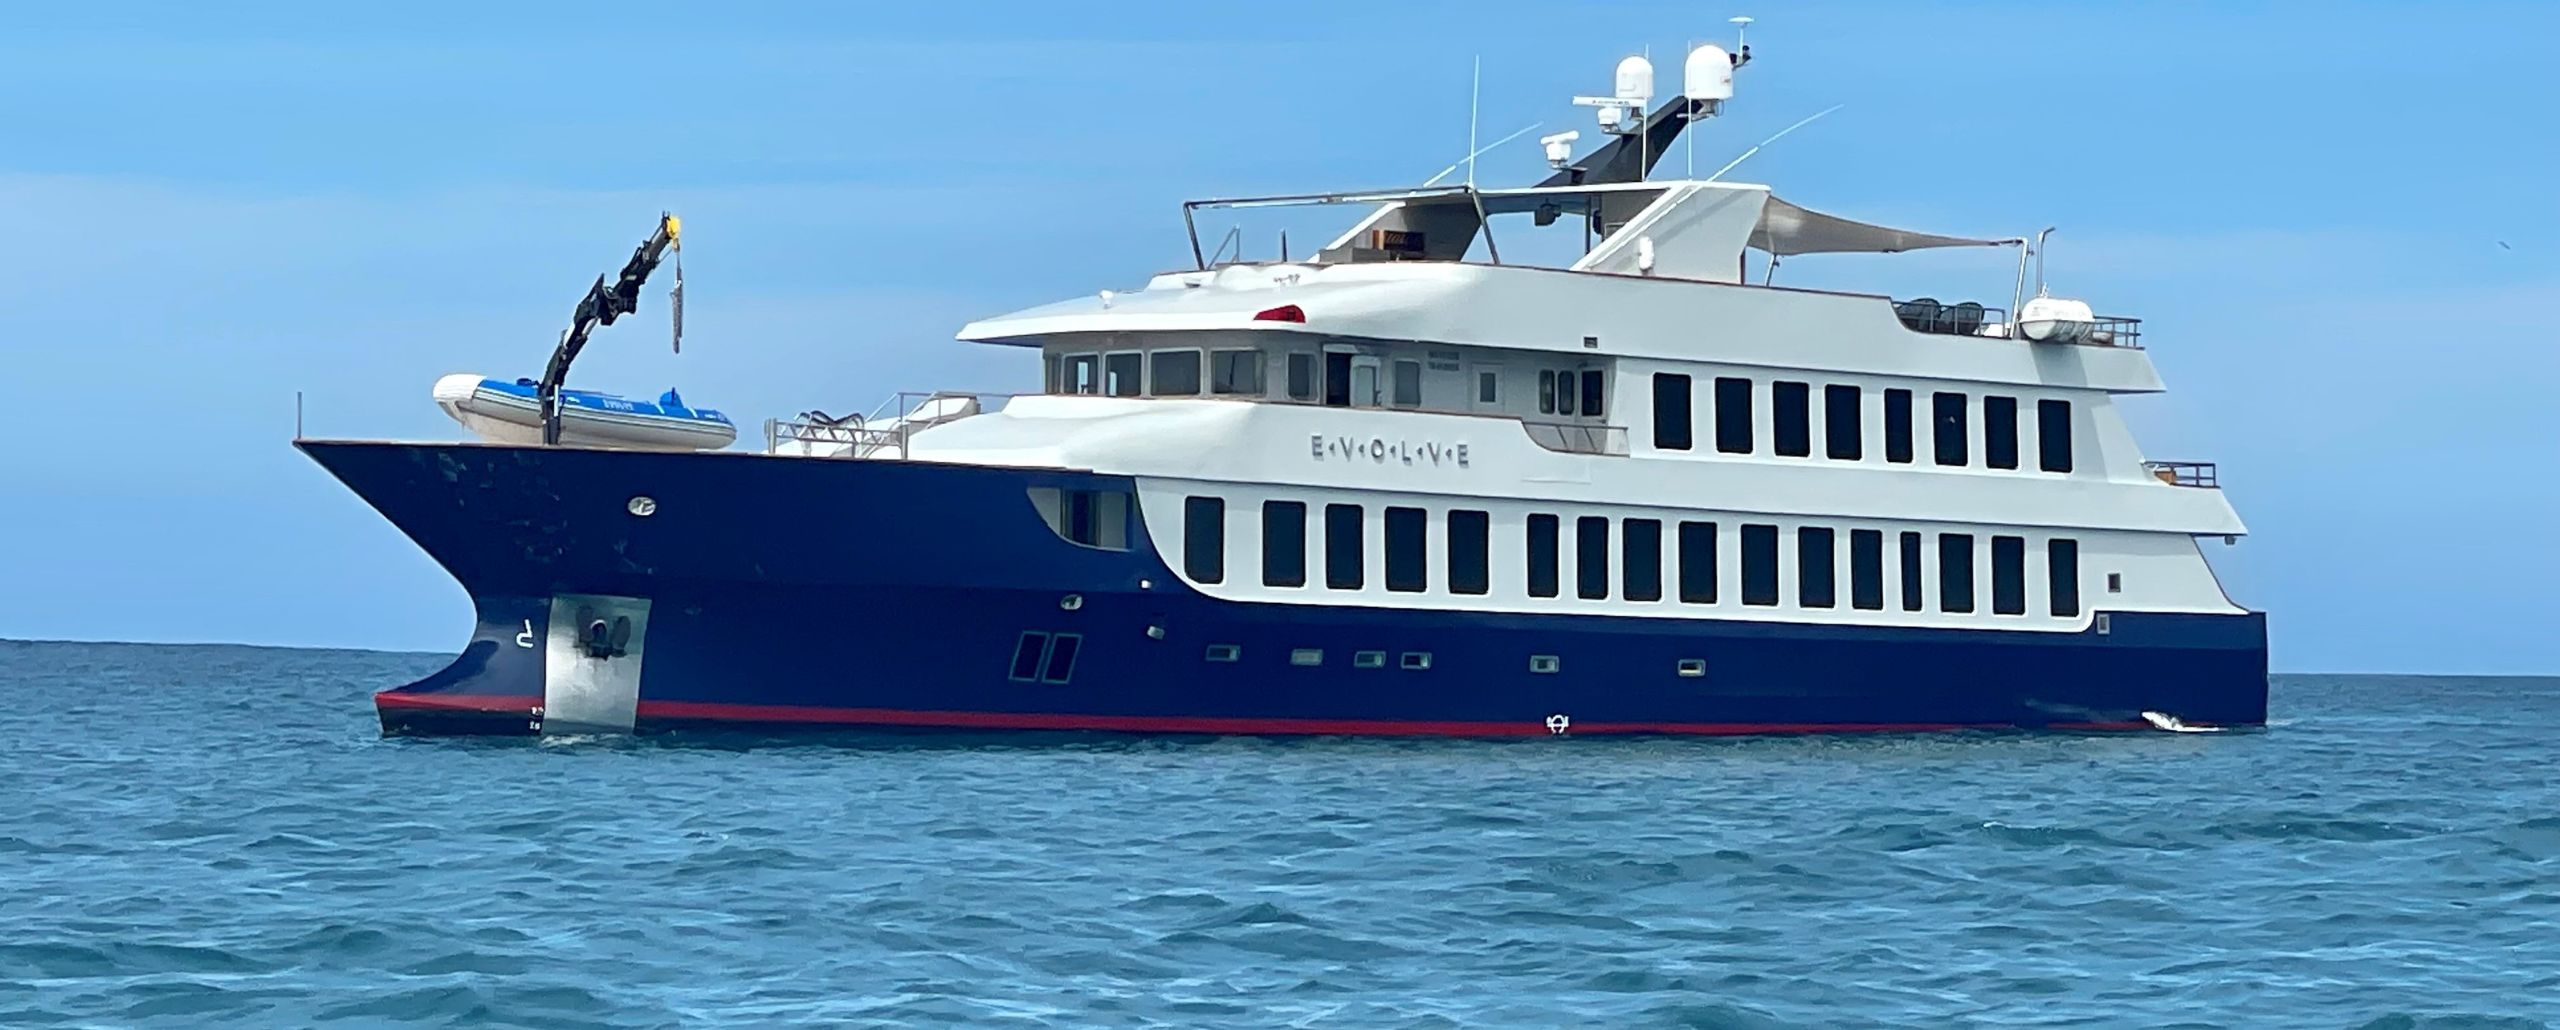 Exploring The Galápagos aboard the MV Evolve